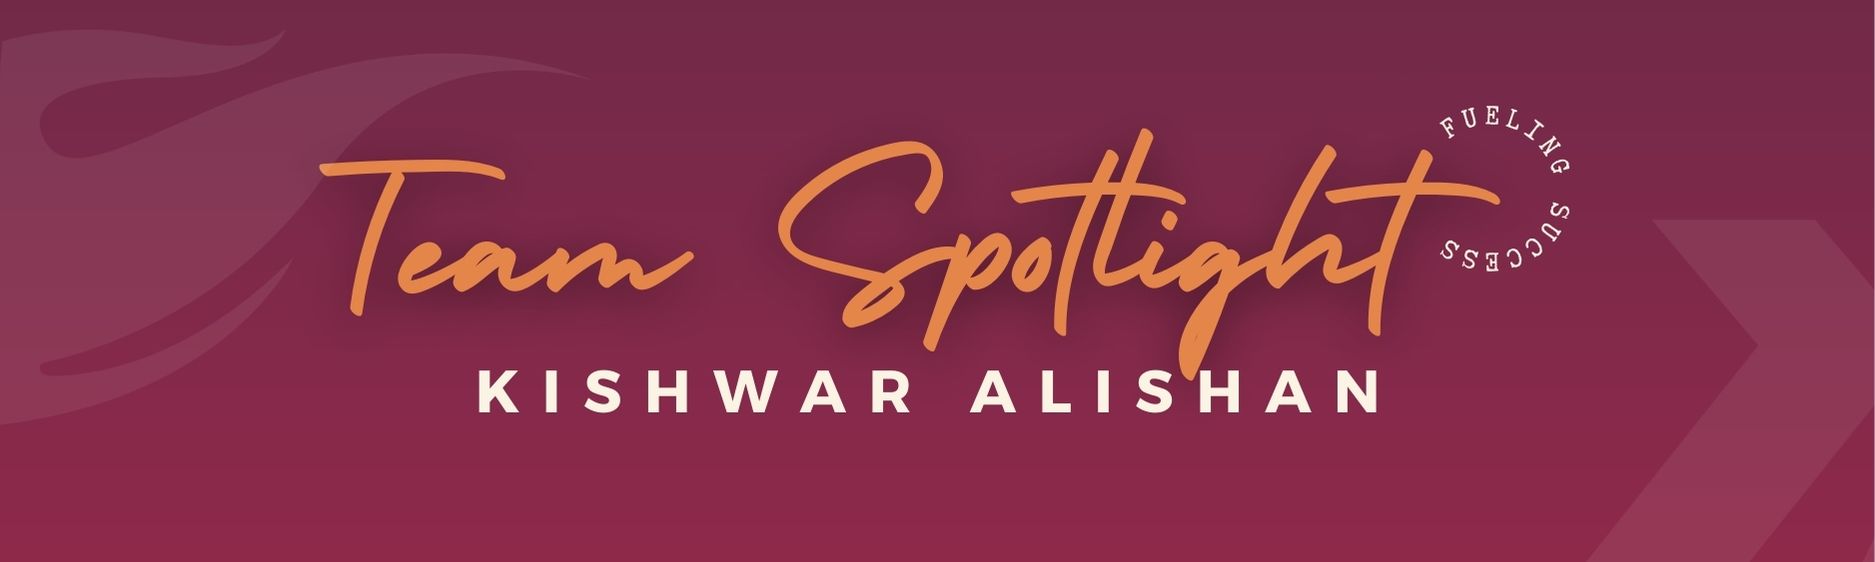 Employee Spotlight: Kishwar Alishan